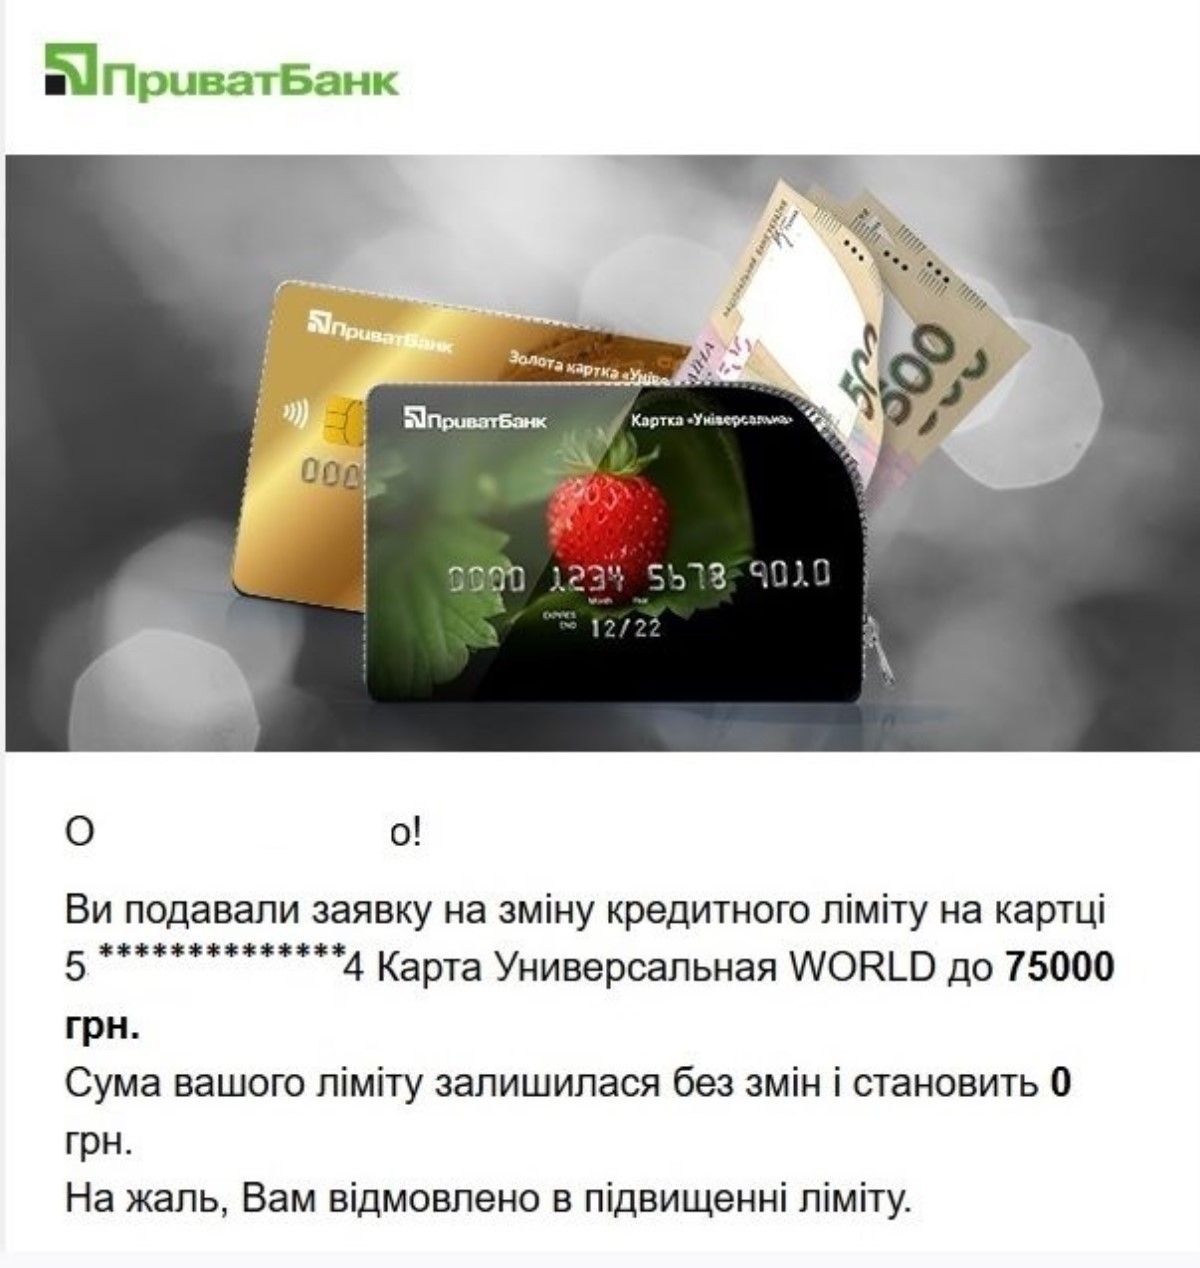 Банки в Украине обнуляют кредитки и сокращают лимиты